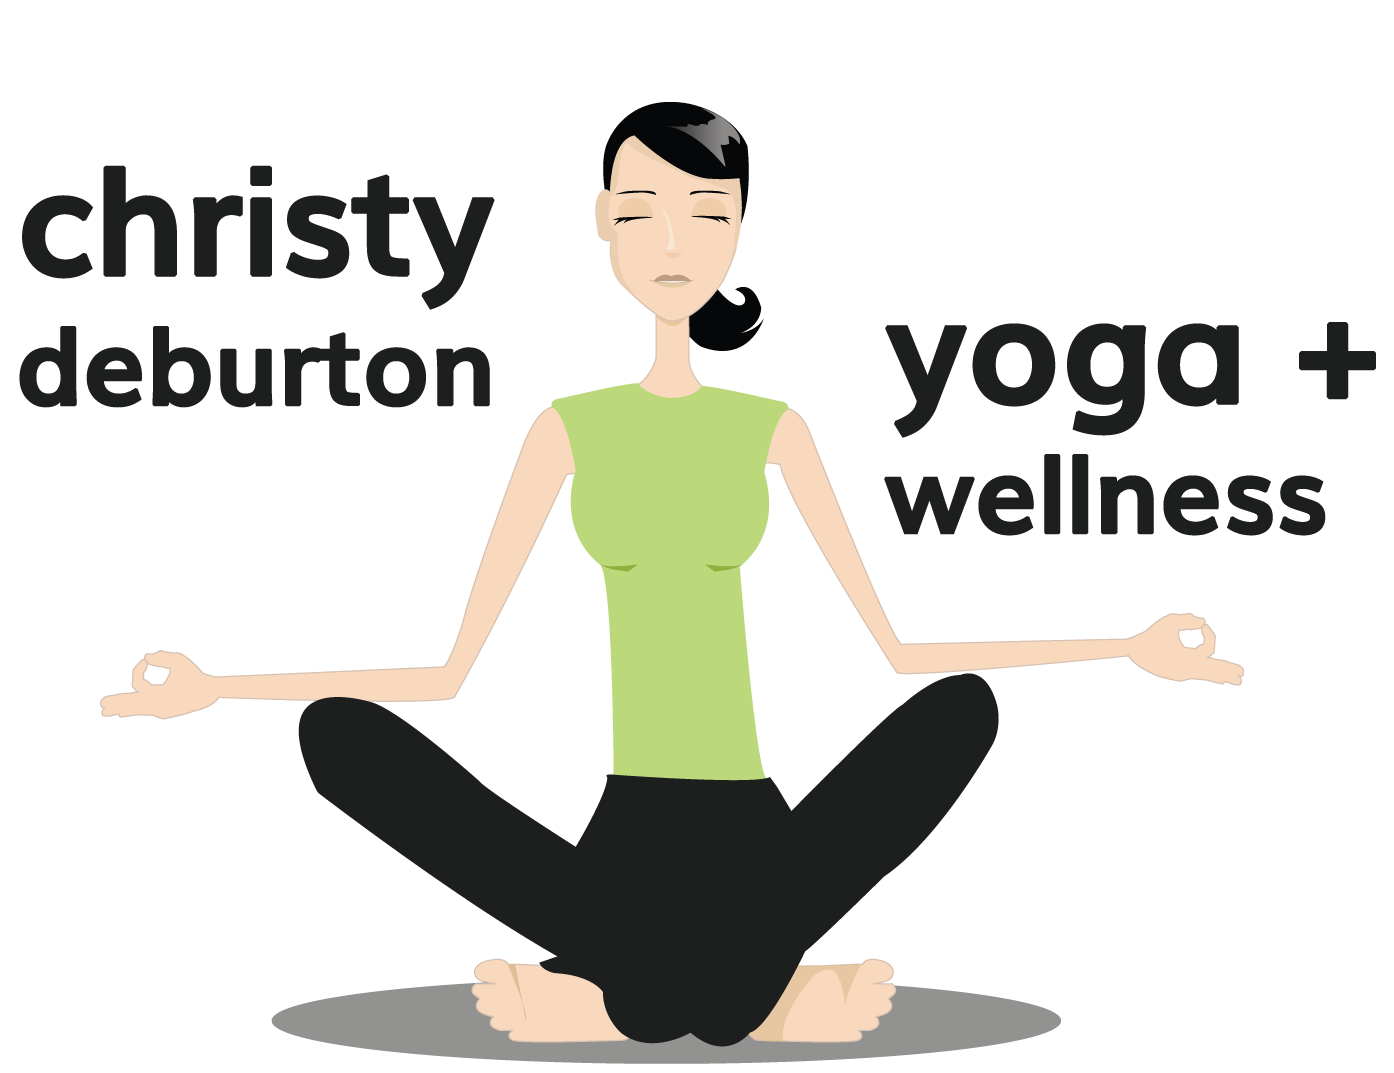 CD yoga and wellness_web (1)